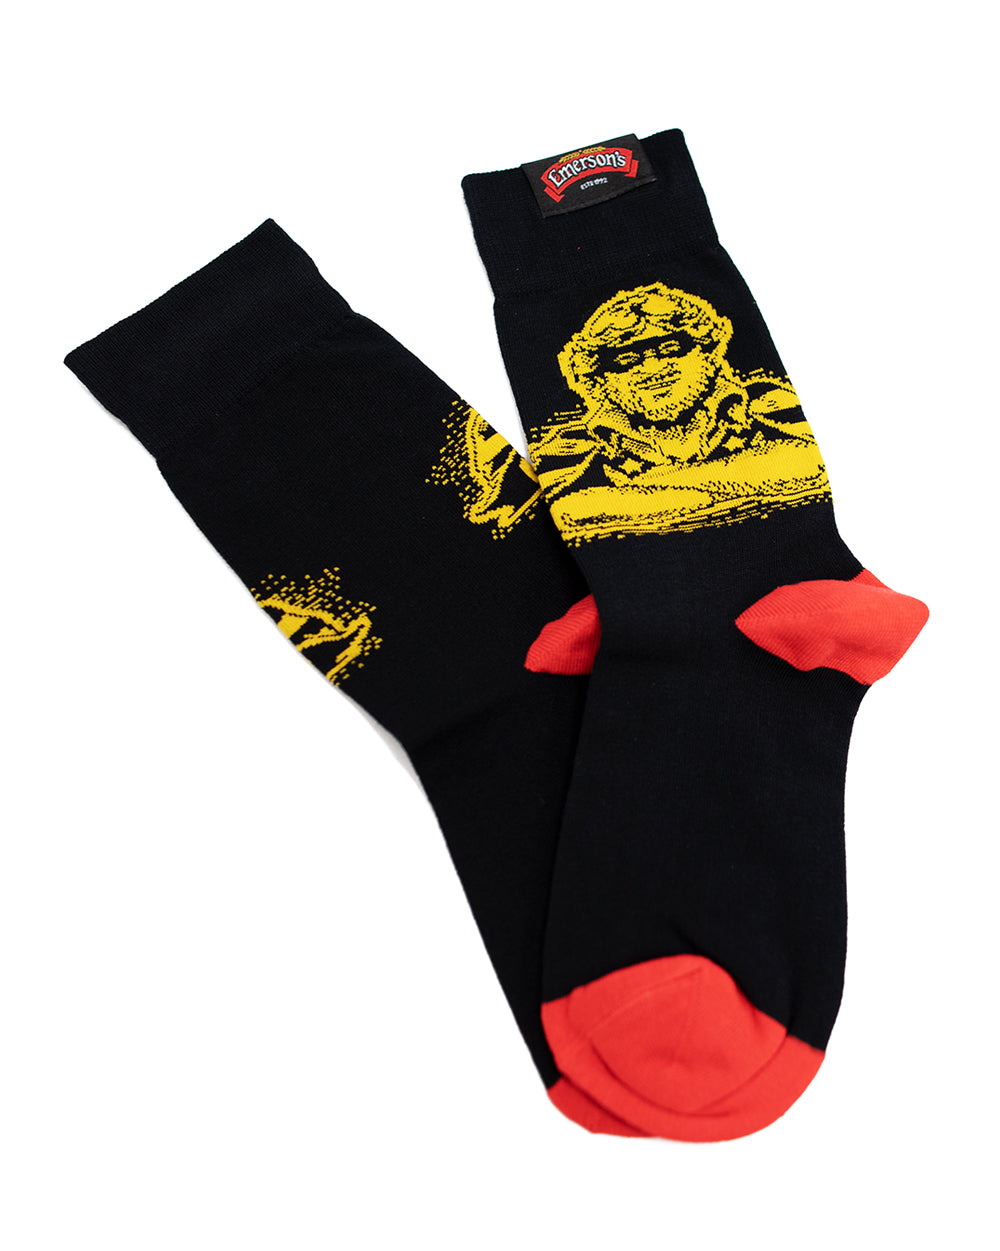 Emerson's Socks - Wear It Proud NZL